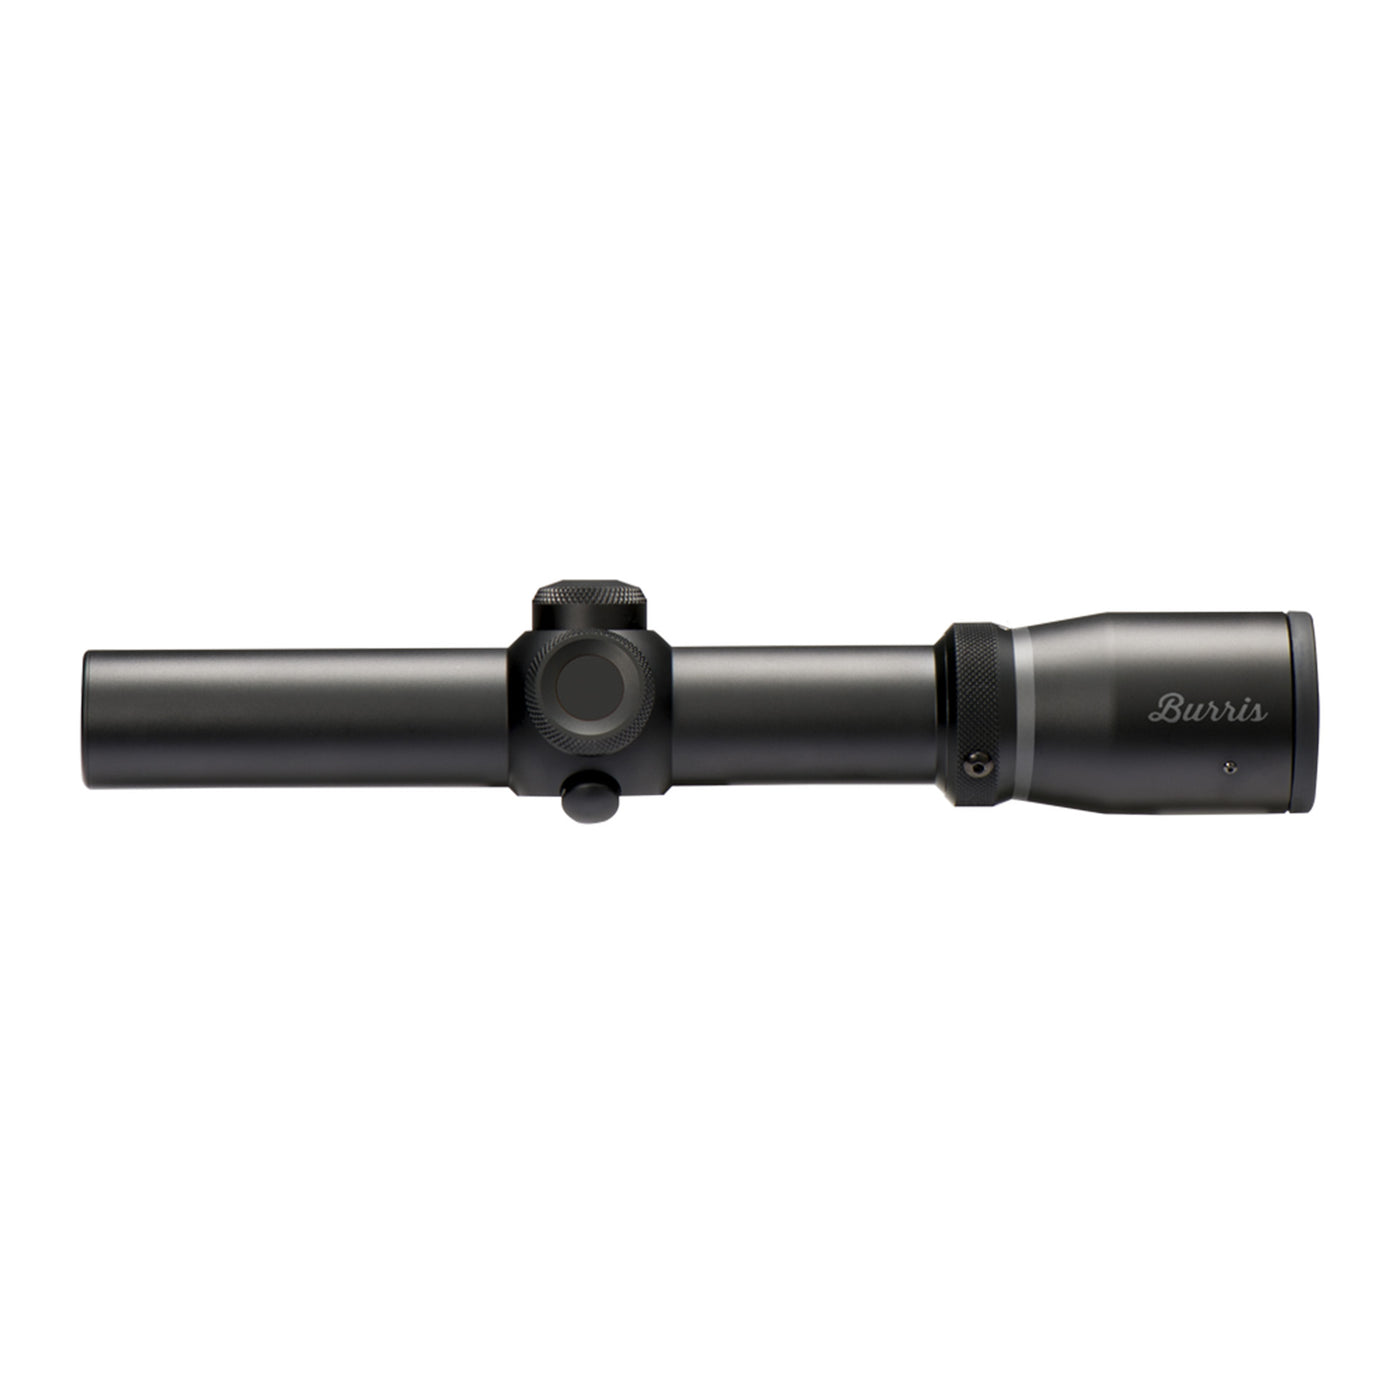 Fullfield TAC30 Riflescope 1-4X24mm